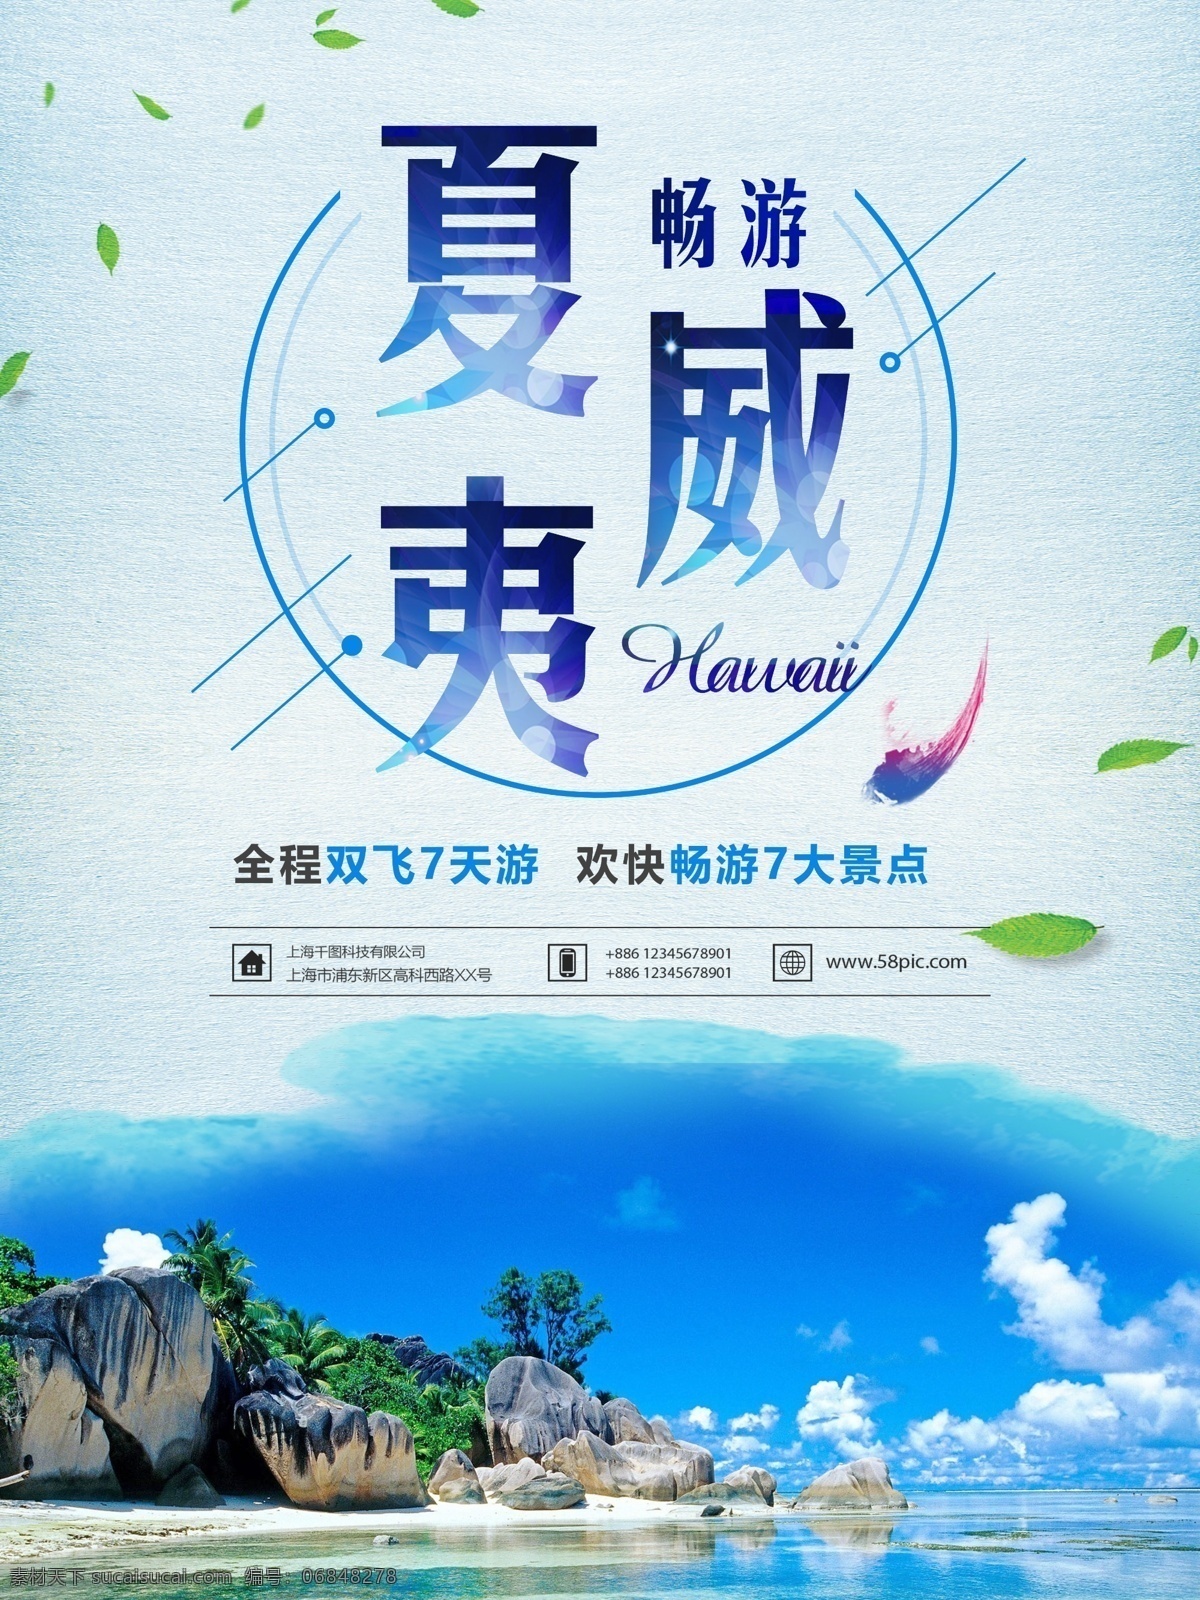 夏威夷 海岛 风情 旅游 海报 夏威夷旅游 旅游海报 蓝色 小清新 旅行 旅行社 海边 旅游优惠 走 7天游 景点 风景